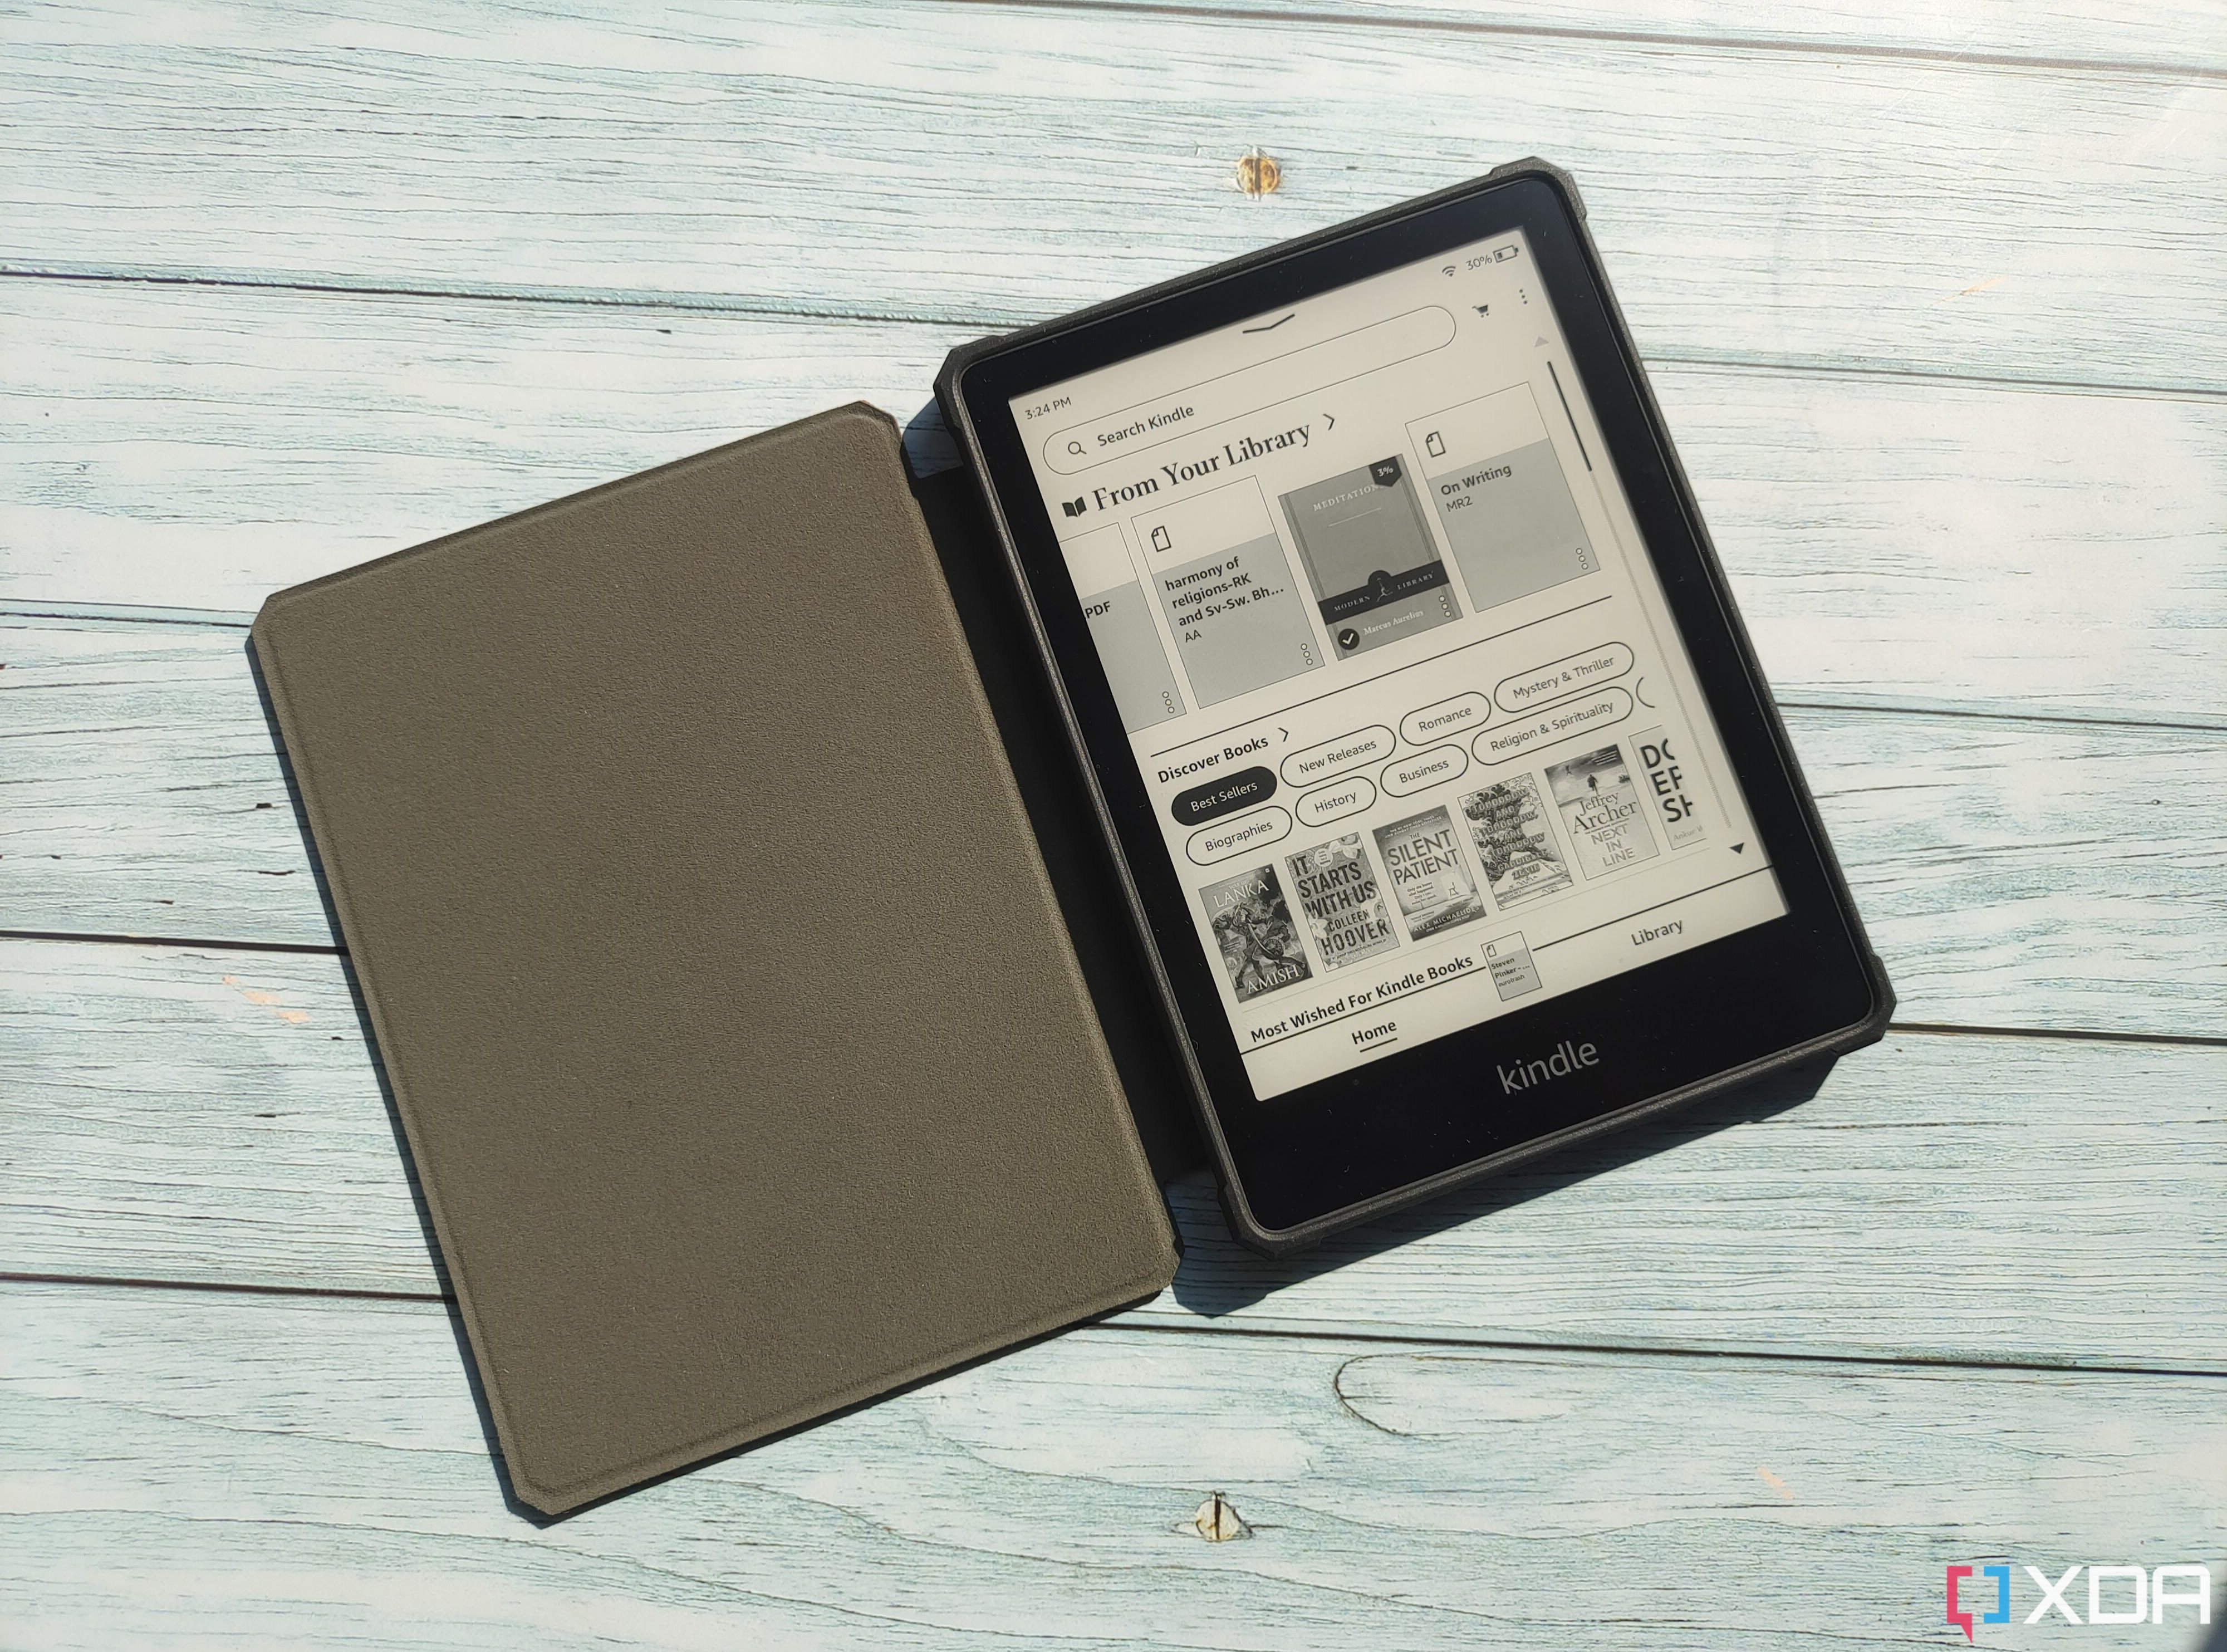  Kindle Paperwhite 5 - 11th Gen 8GB Wi-Fi 6.8 - Black